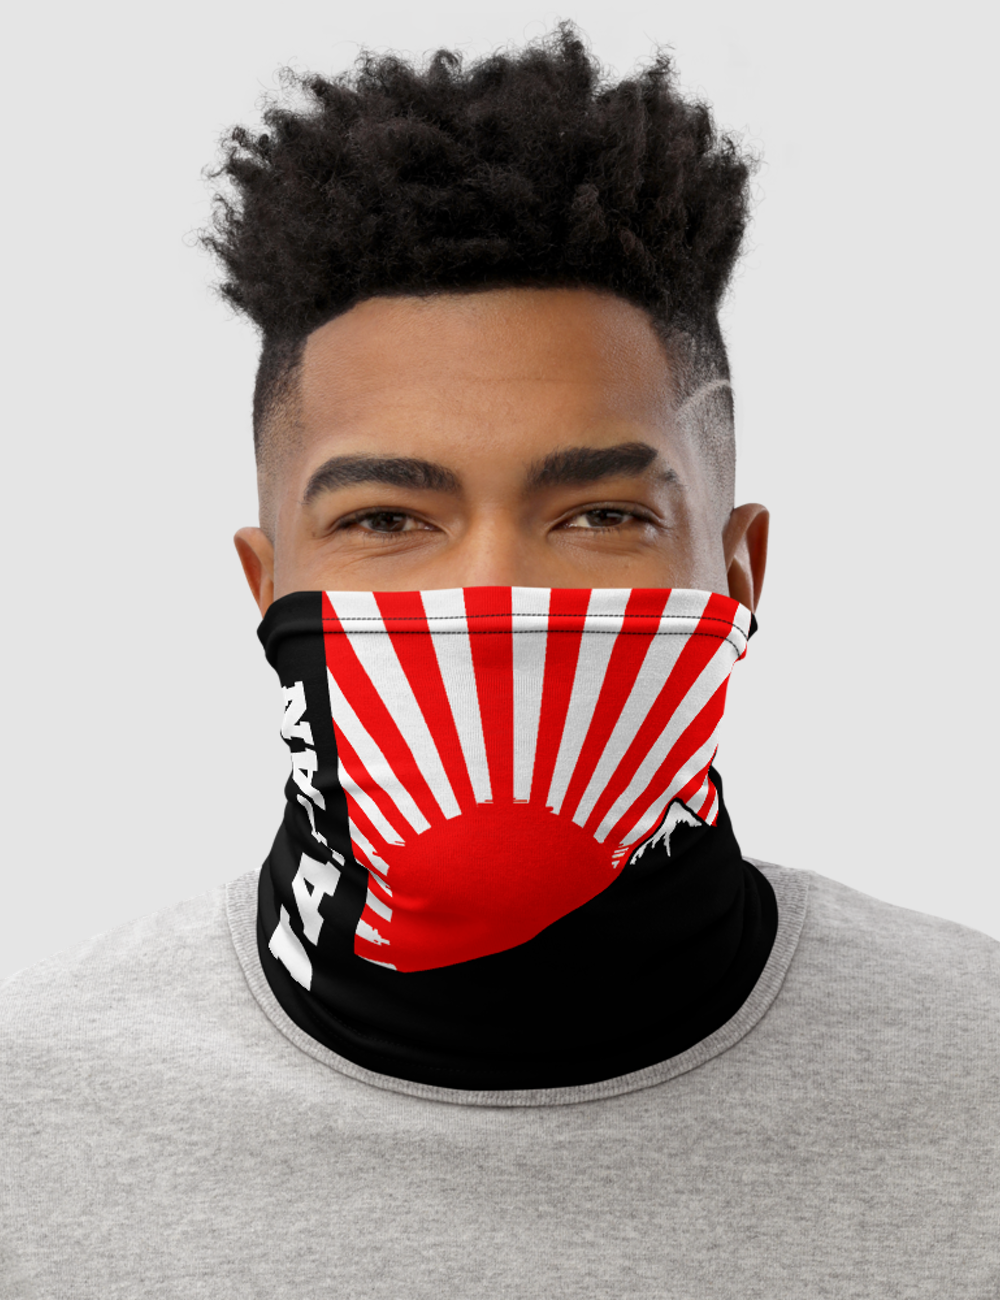 Japan Rising | Neck Gaiter Face Mask OniTakai